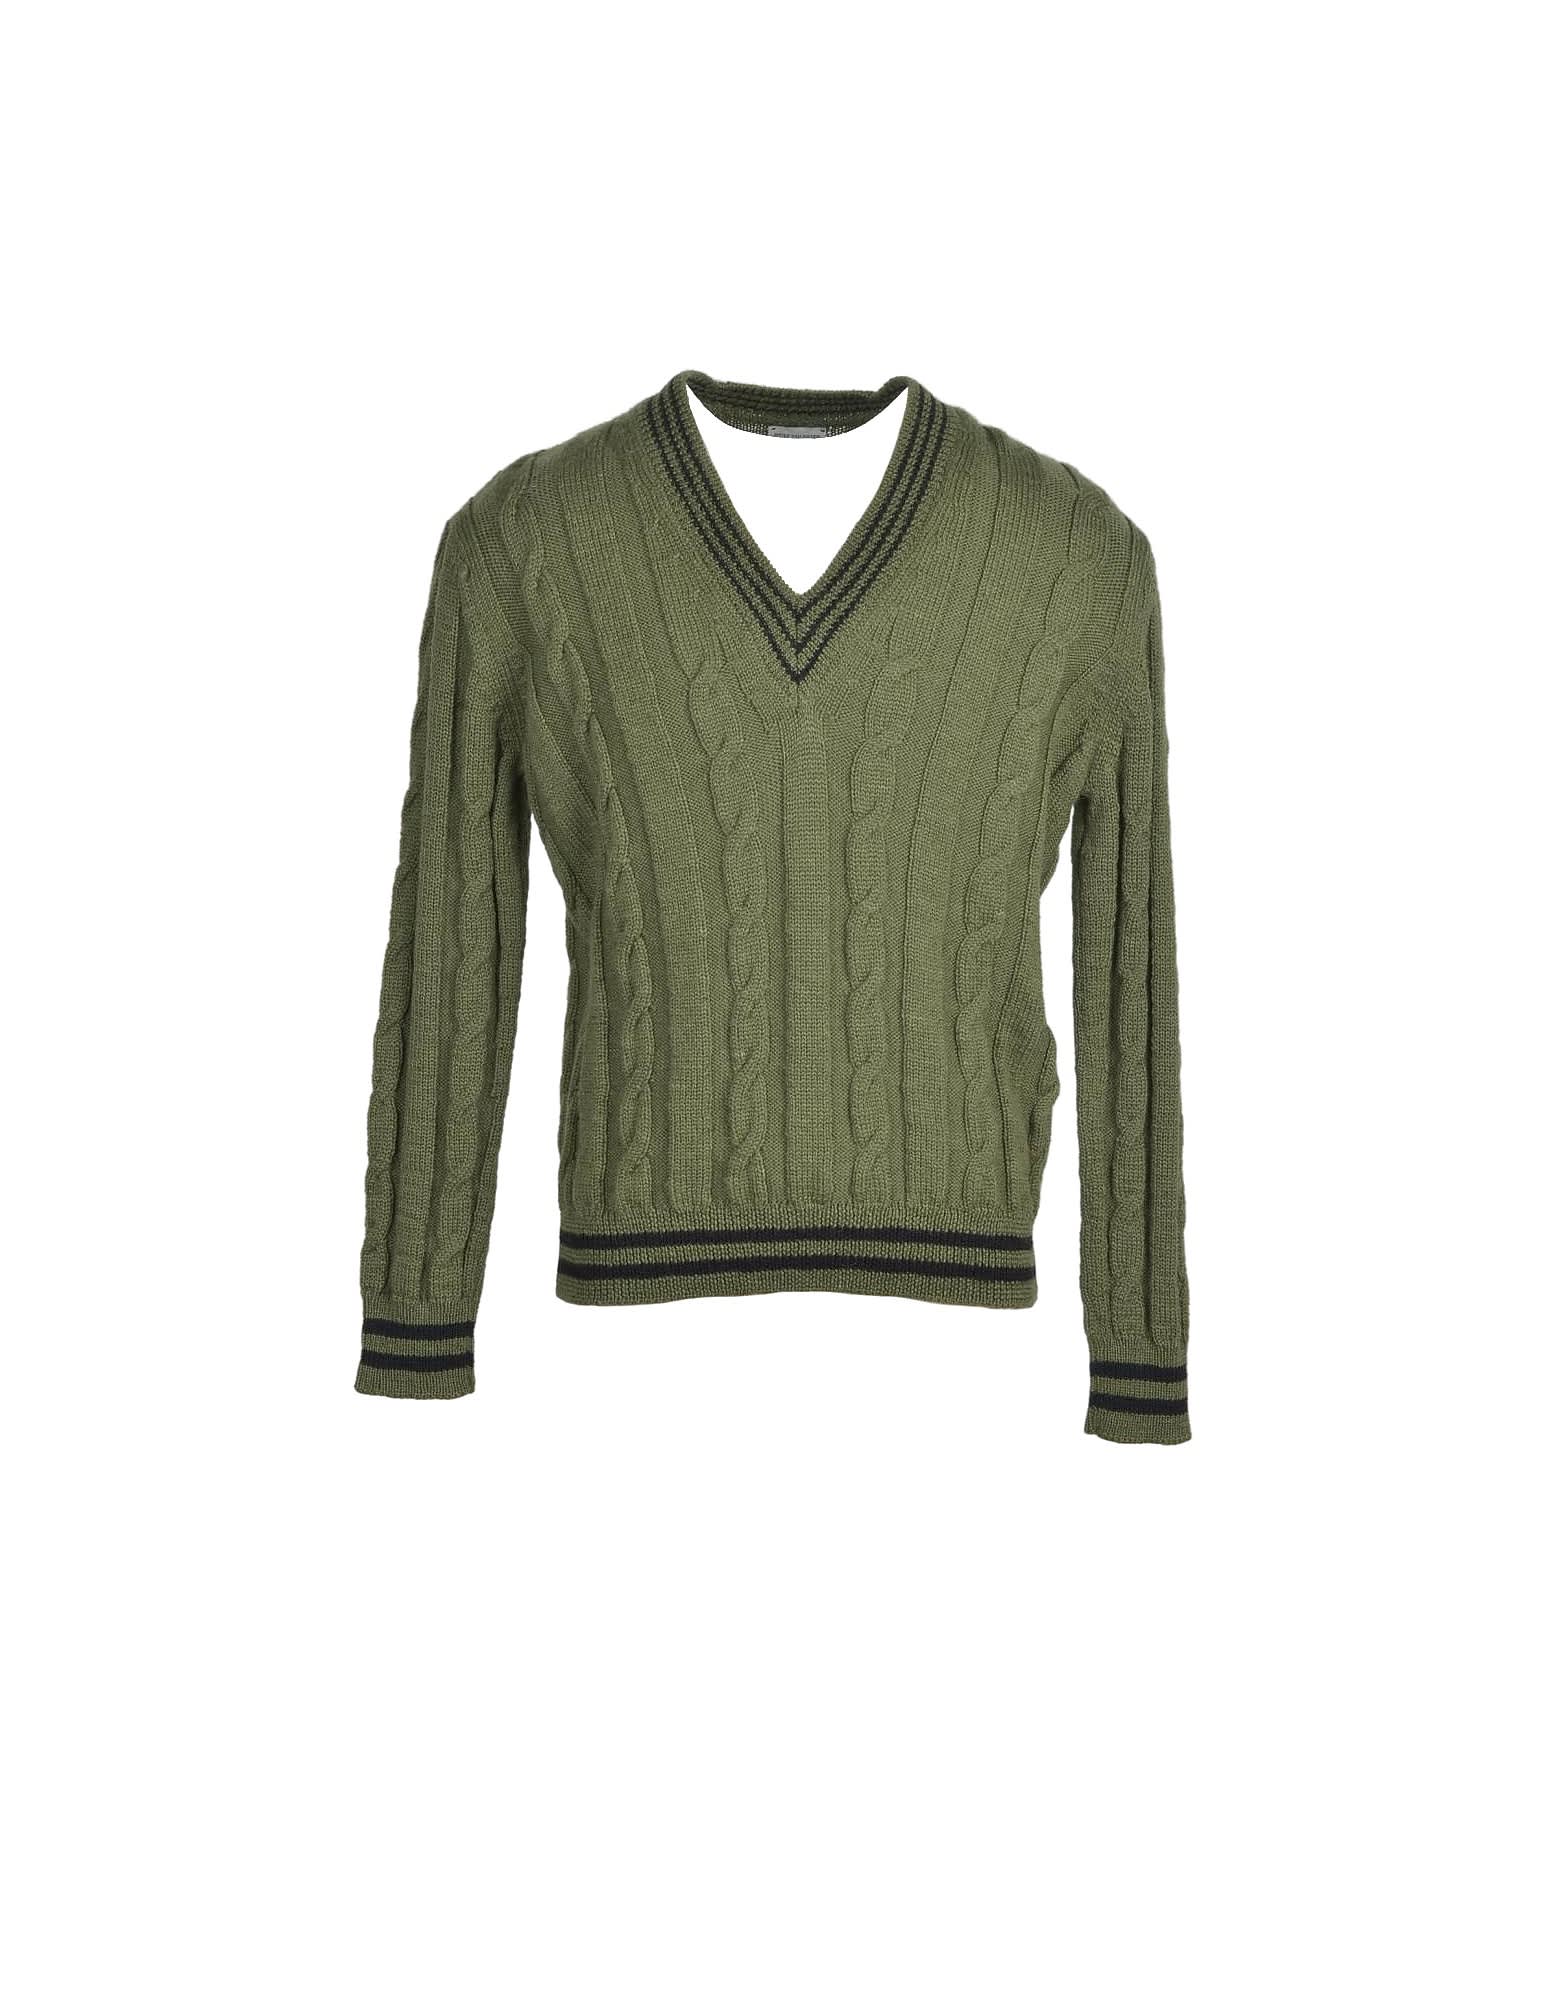 Dries Van Noten Mens Green Sweater